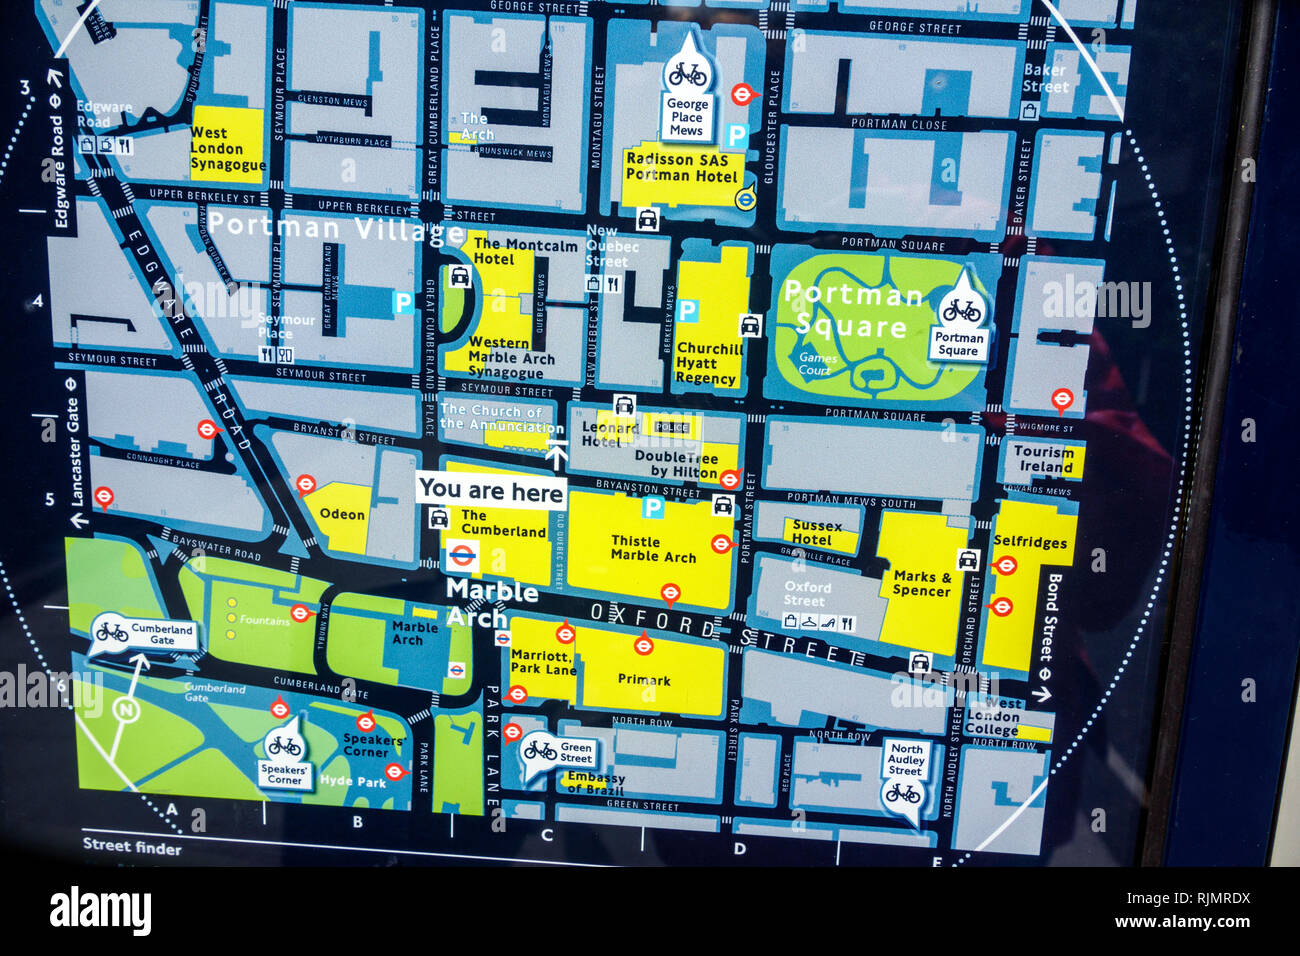 Vereinigtes Königreich Großbritannien England London Marylebone Marble Arch Street finder Karte Legigle London Wegfinden System Nachbarschaft Richtungen P Stockfoto